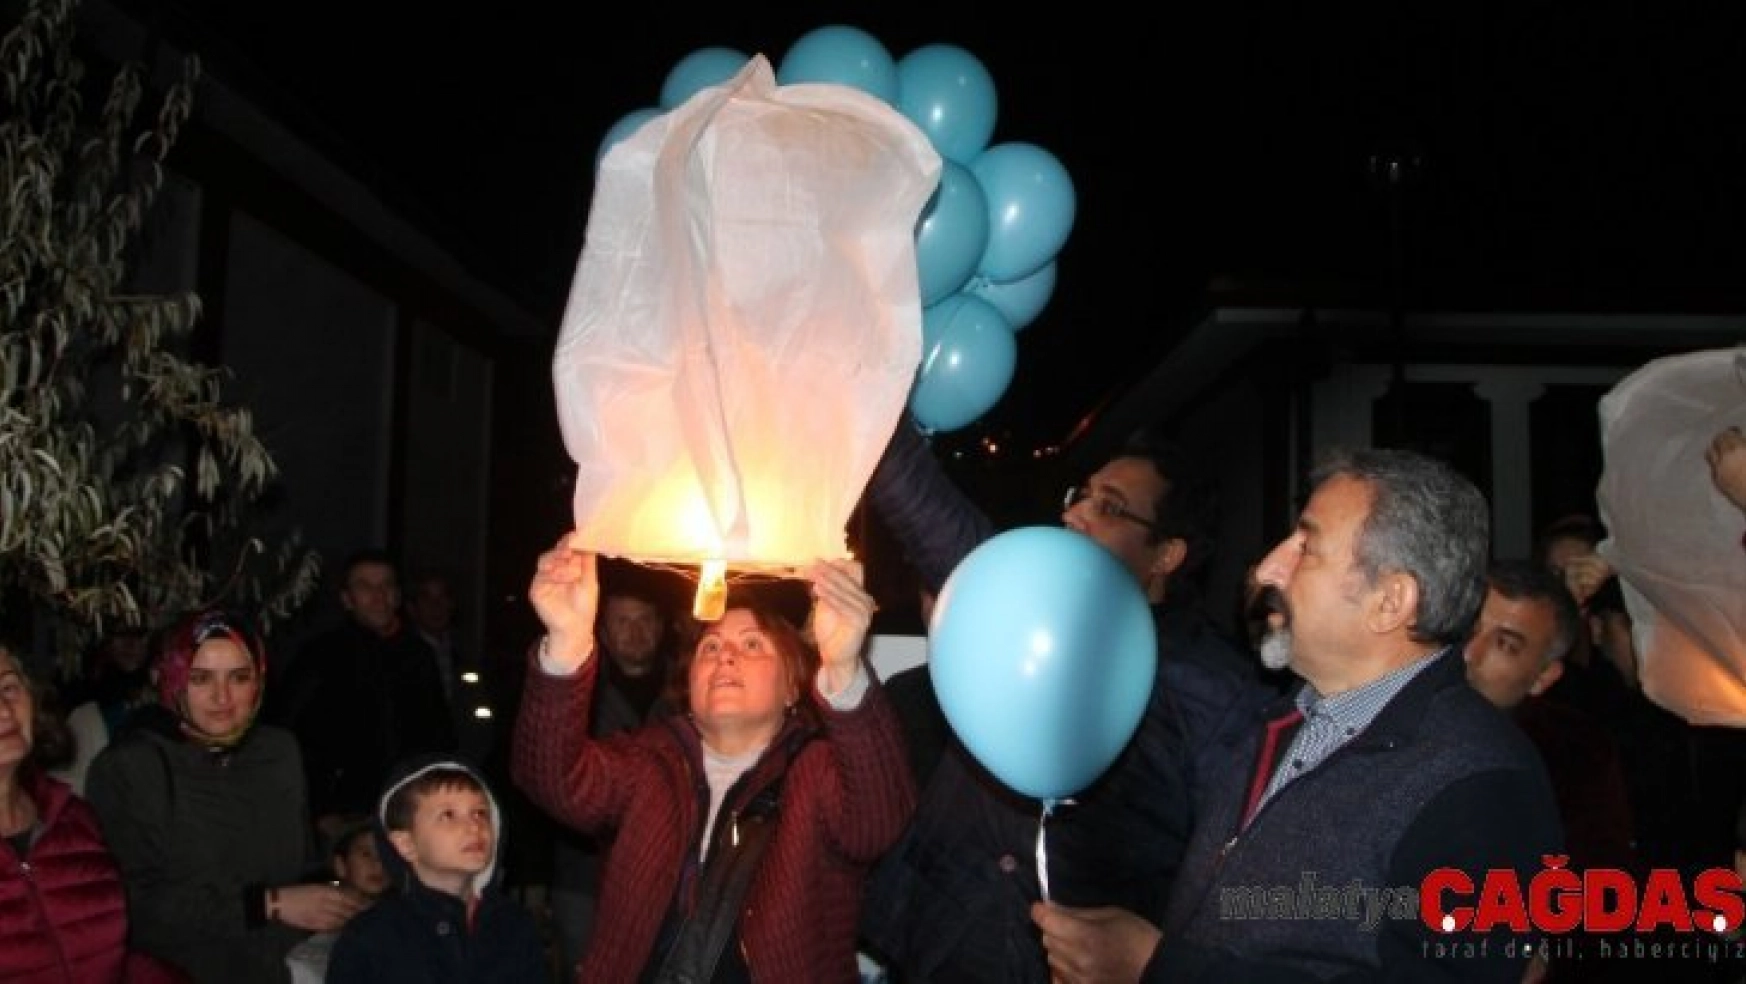 Engelsiz bir gelecek için balonlar gökyüzüne bırakıldı